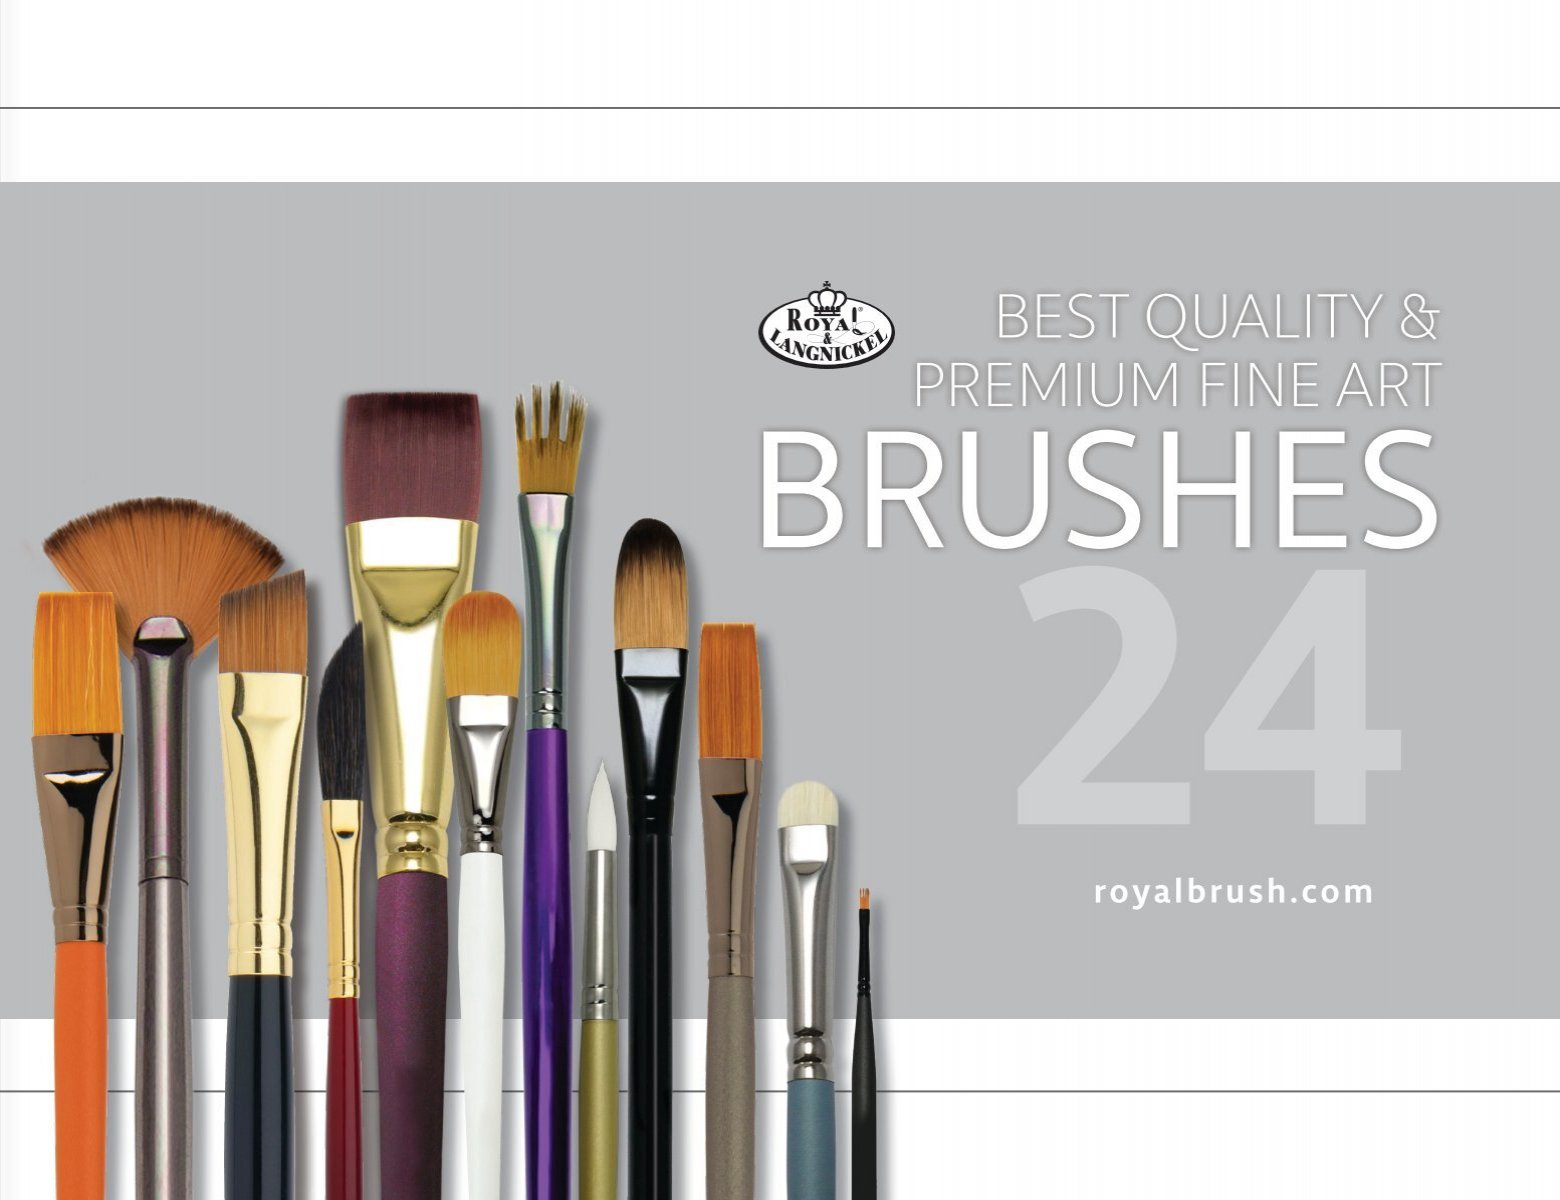 Pro Art Brush Sable Mix Set Flat & Round 4pc, Paint Brushes, Acrylic Paint  Brush Set, Paint Brushes Acrylic Painting, Small Paint Brushes, Paintbrush,  Acrylic Paint Brushes 